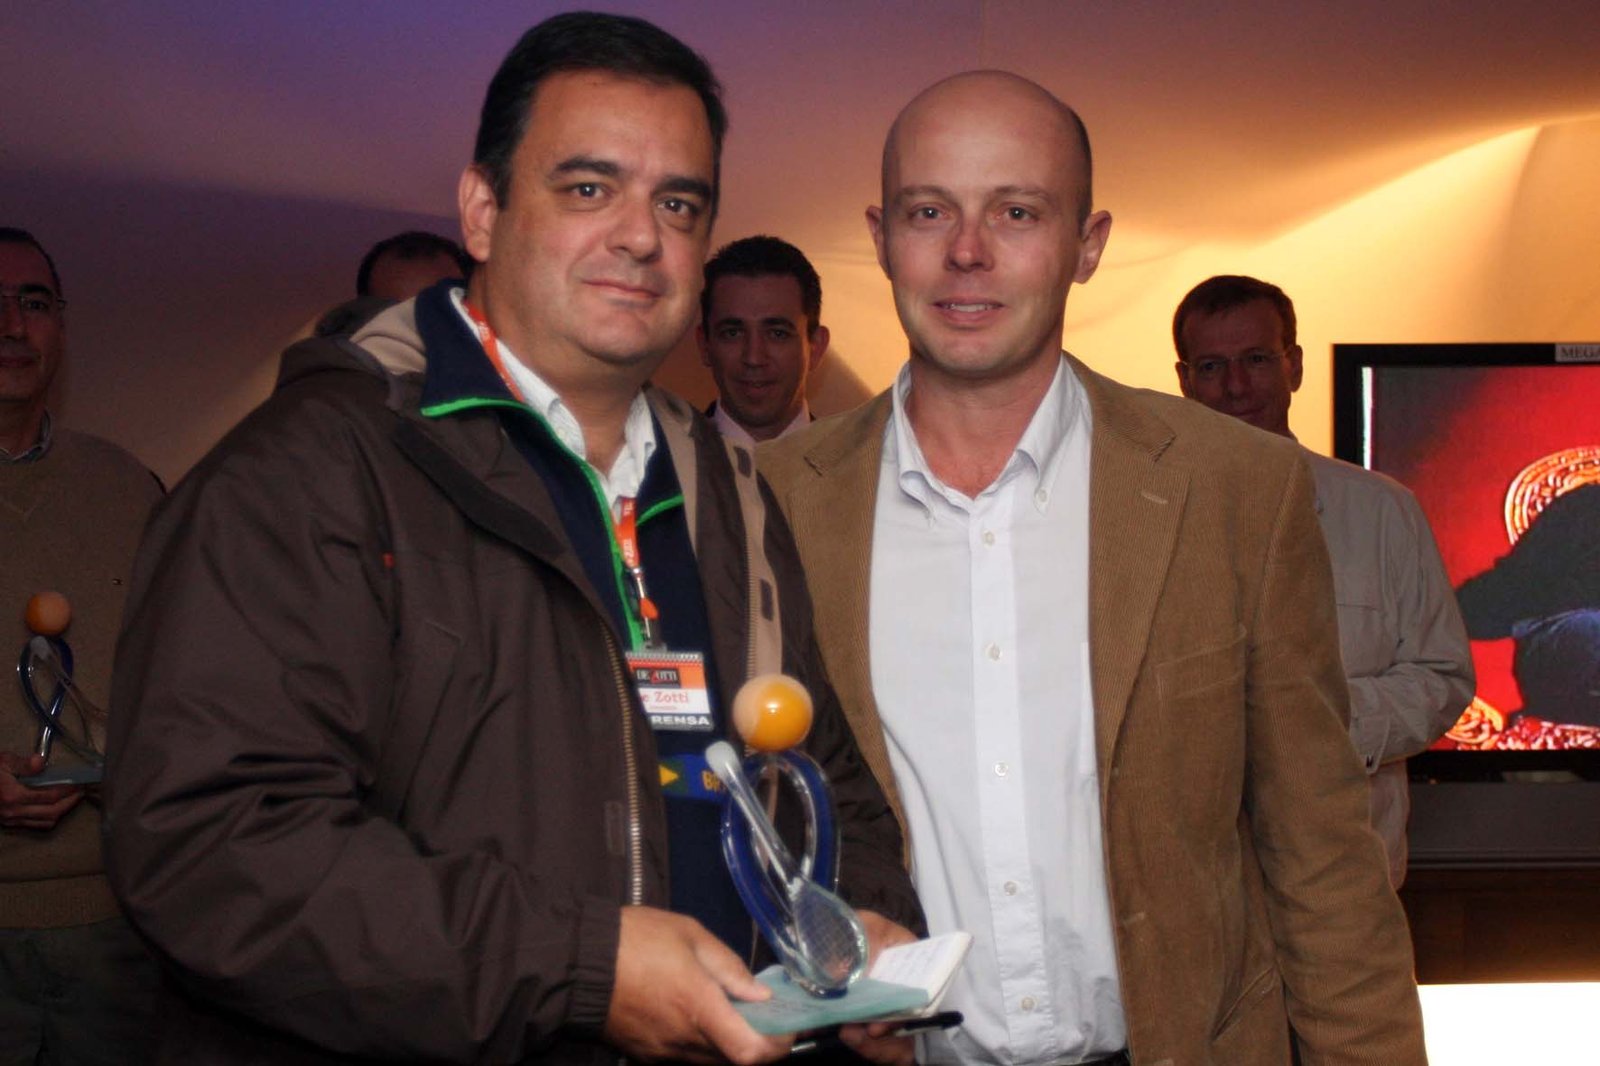 De Zotti Comunicações recebendo homenagem no Torneio de Tênis de Blumenau